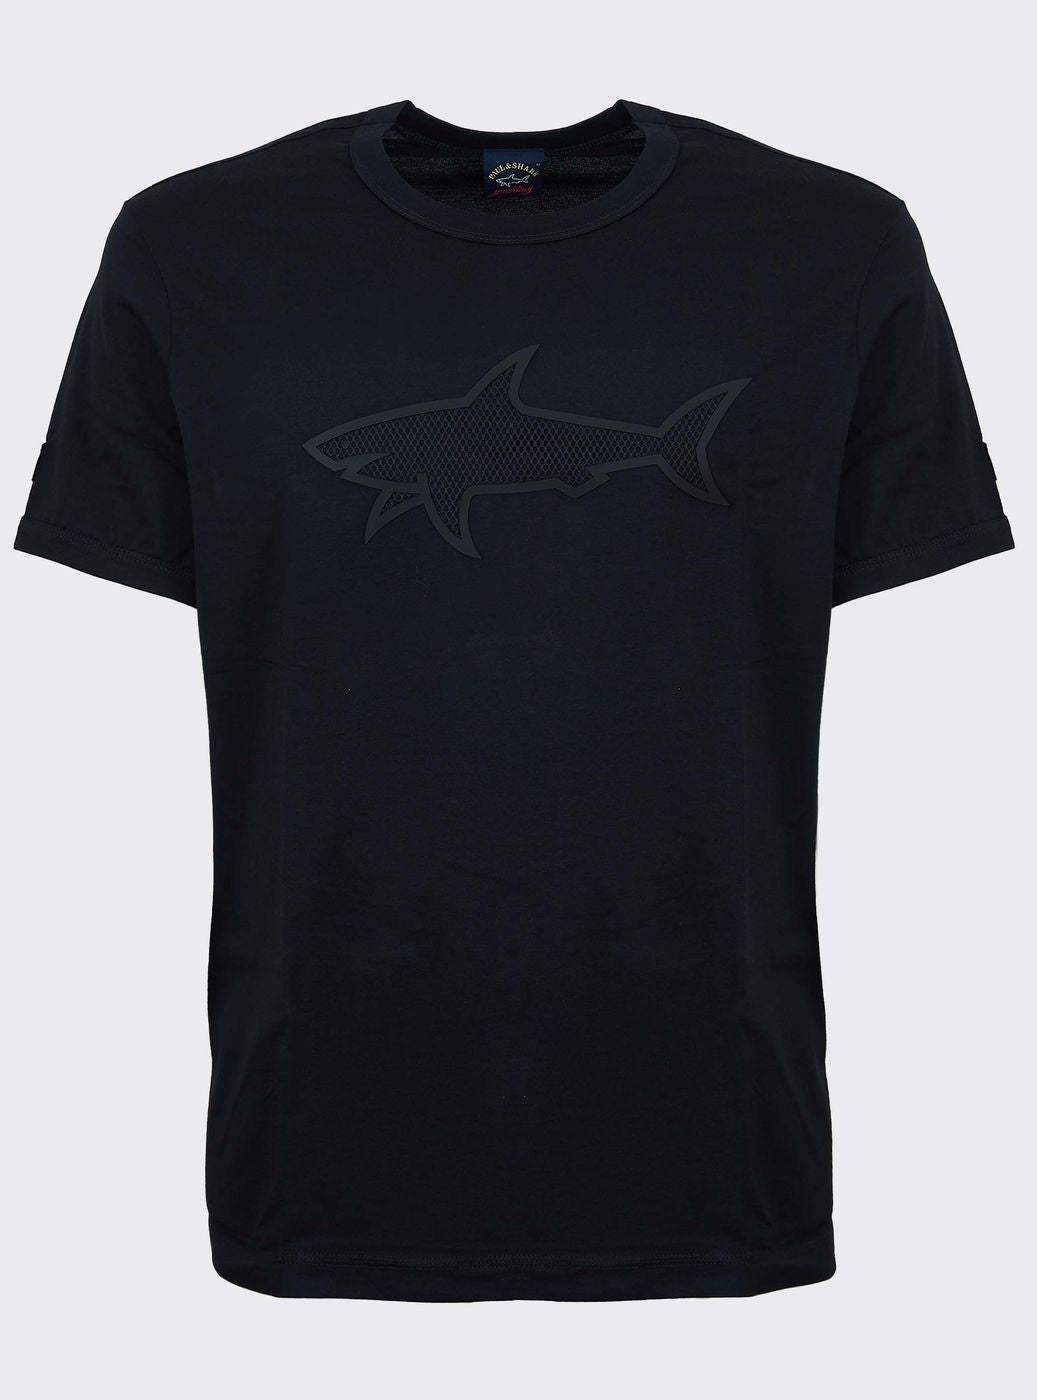 T-shirt Paul & Shark logo in rilievo